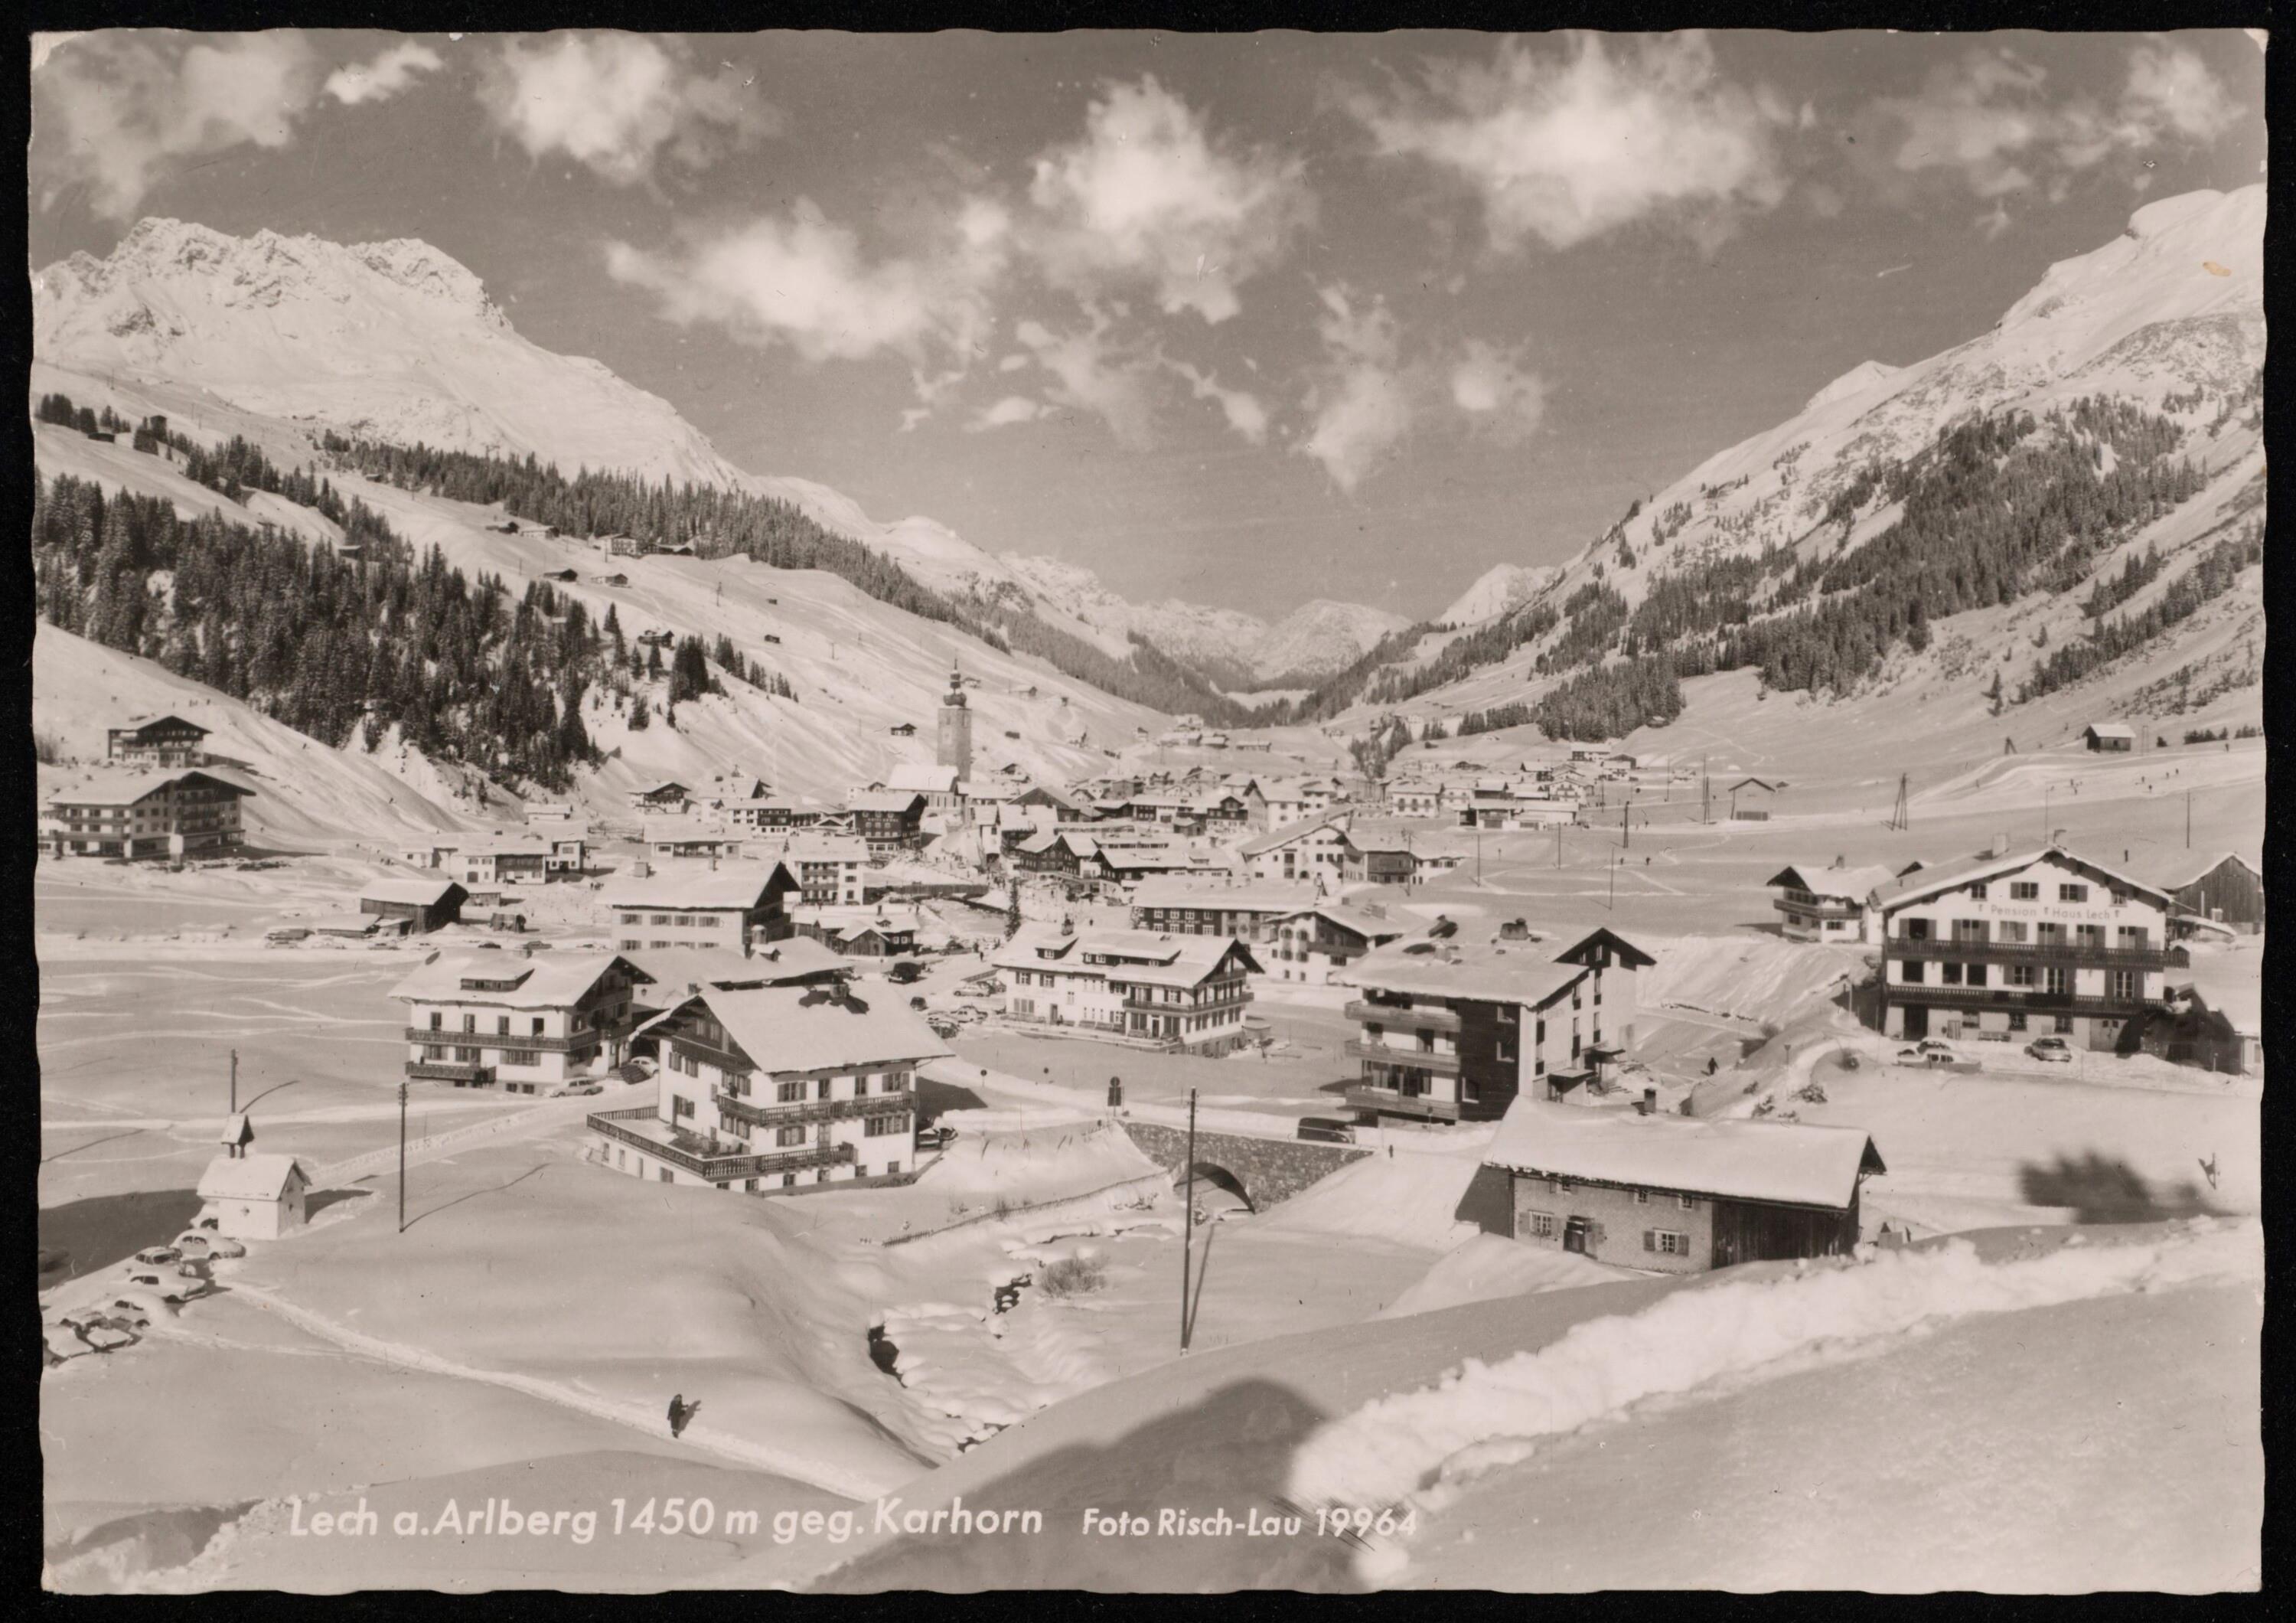 Lech a. Arlberg 1450 m geg. Karhorn></div>


    <hr>
    <div class=